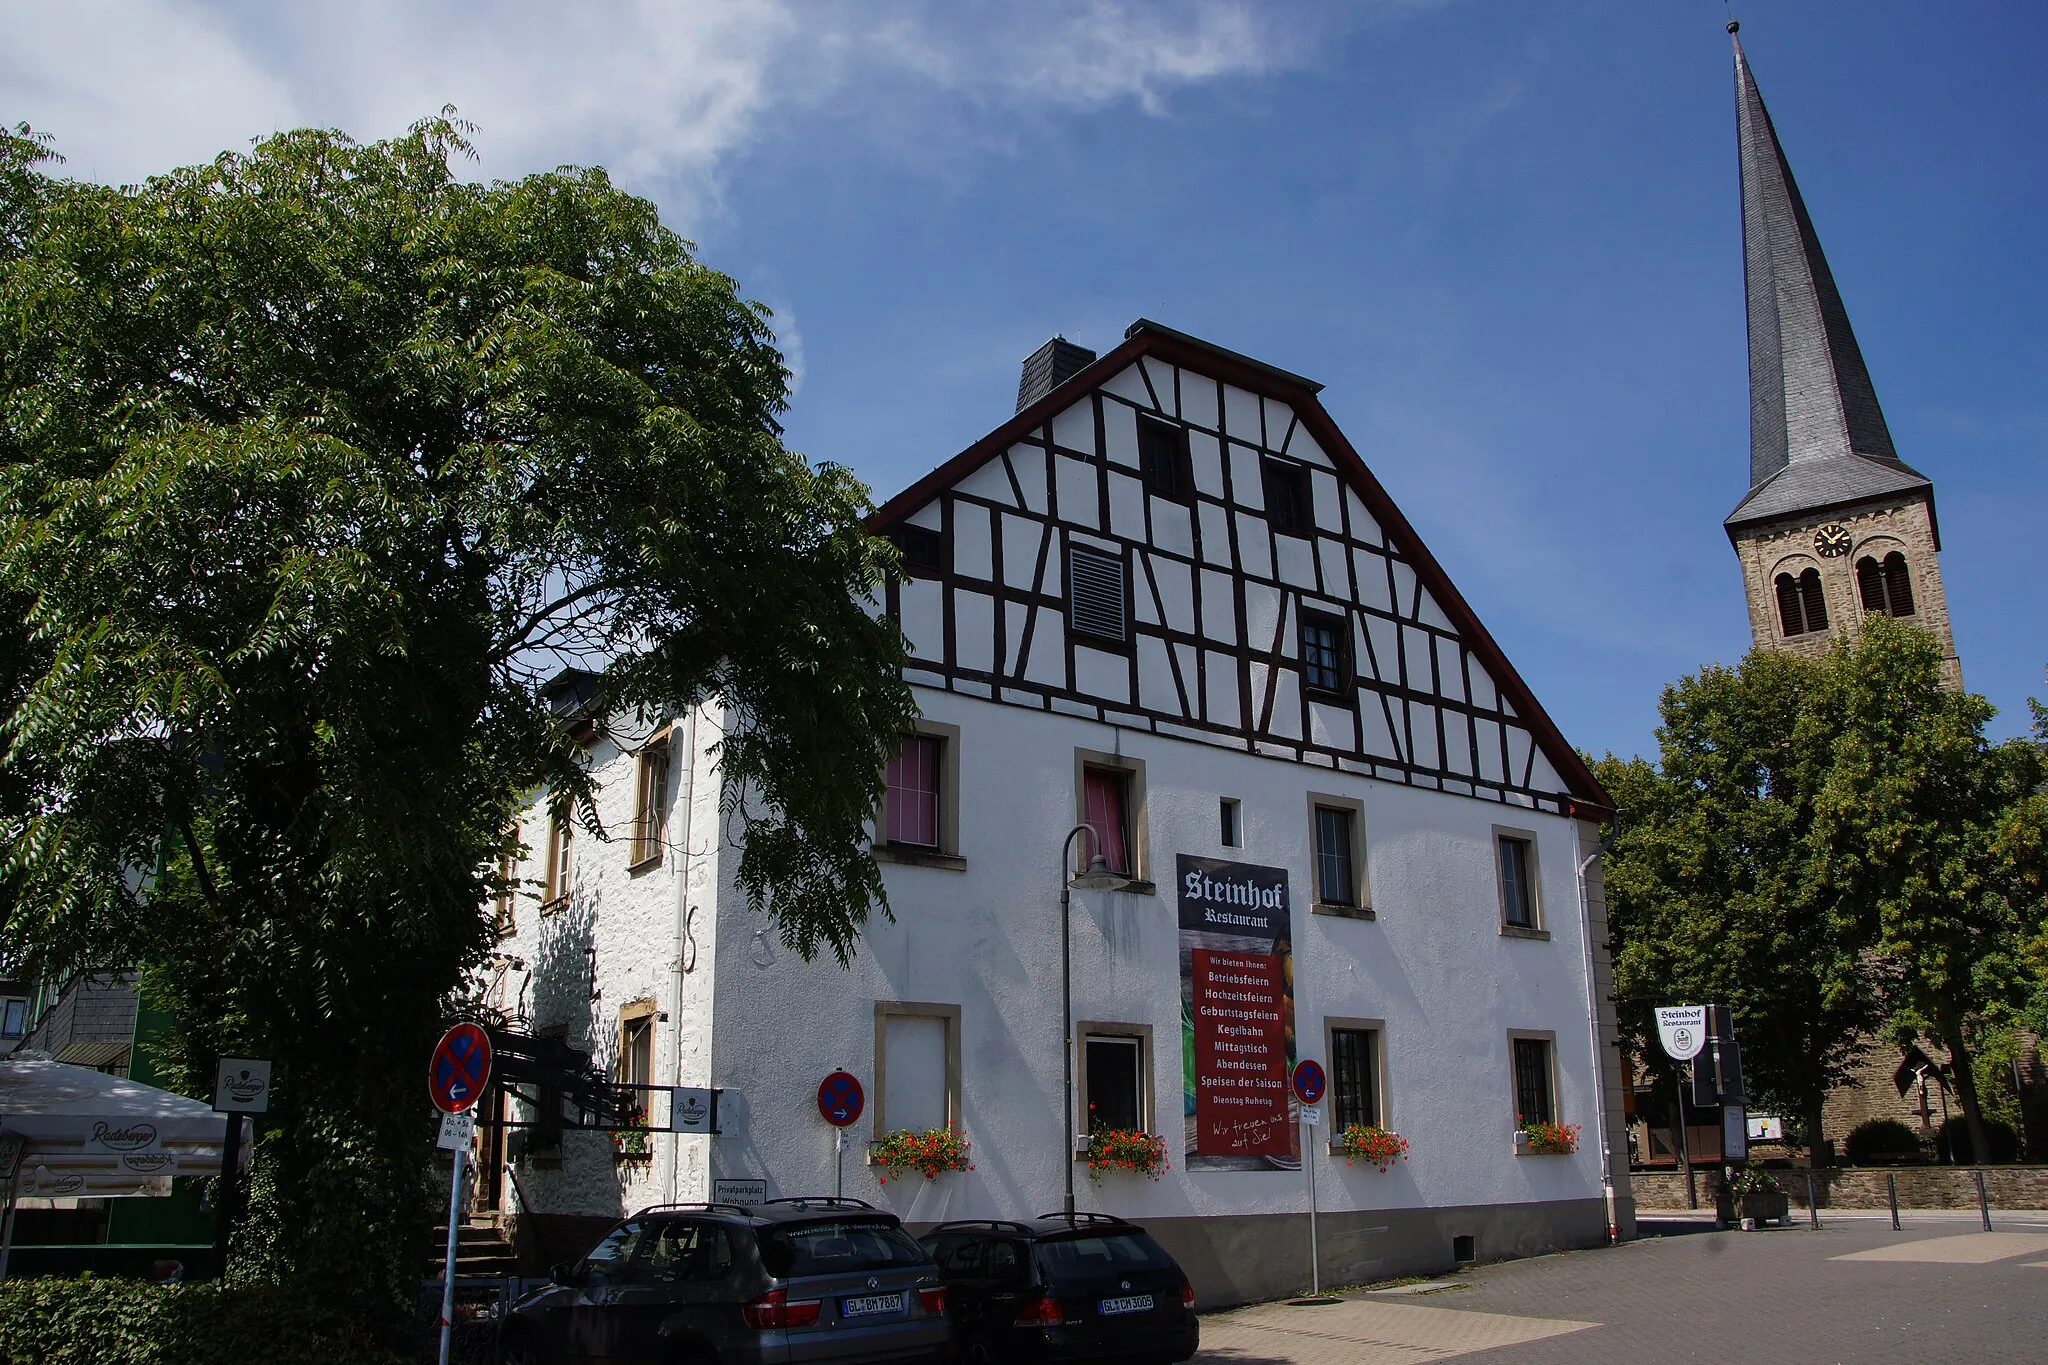 Photo showing: The Steinhof in Overath.